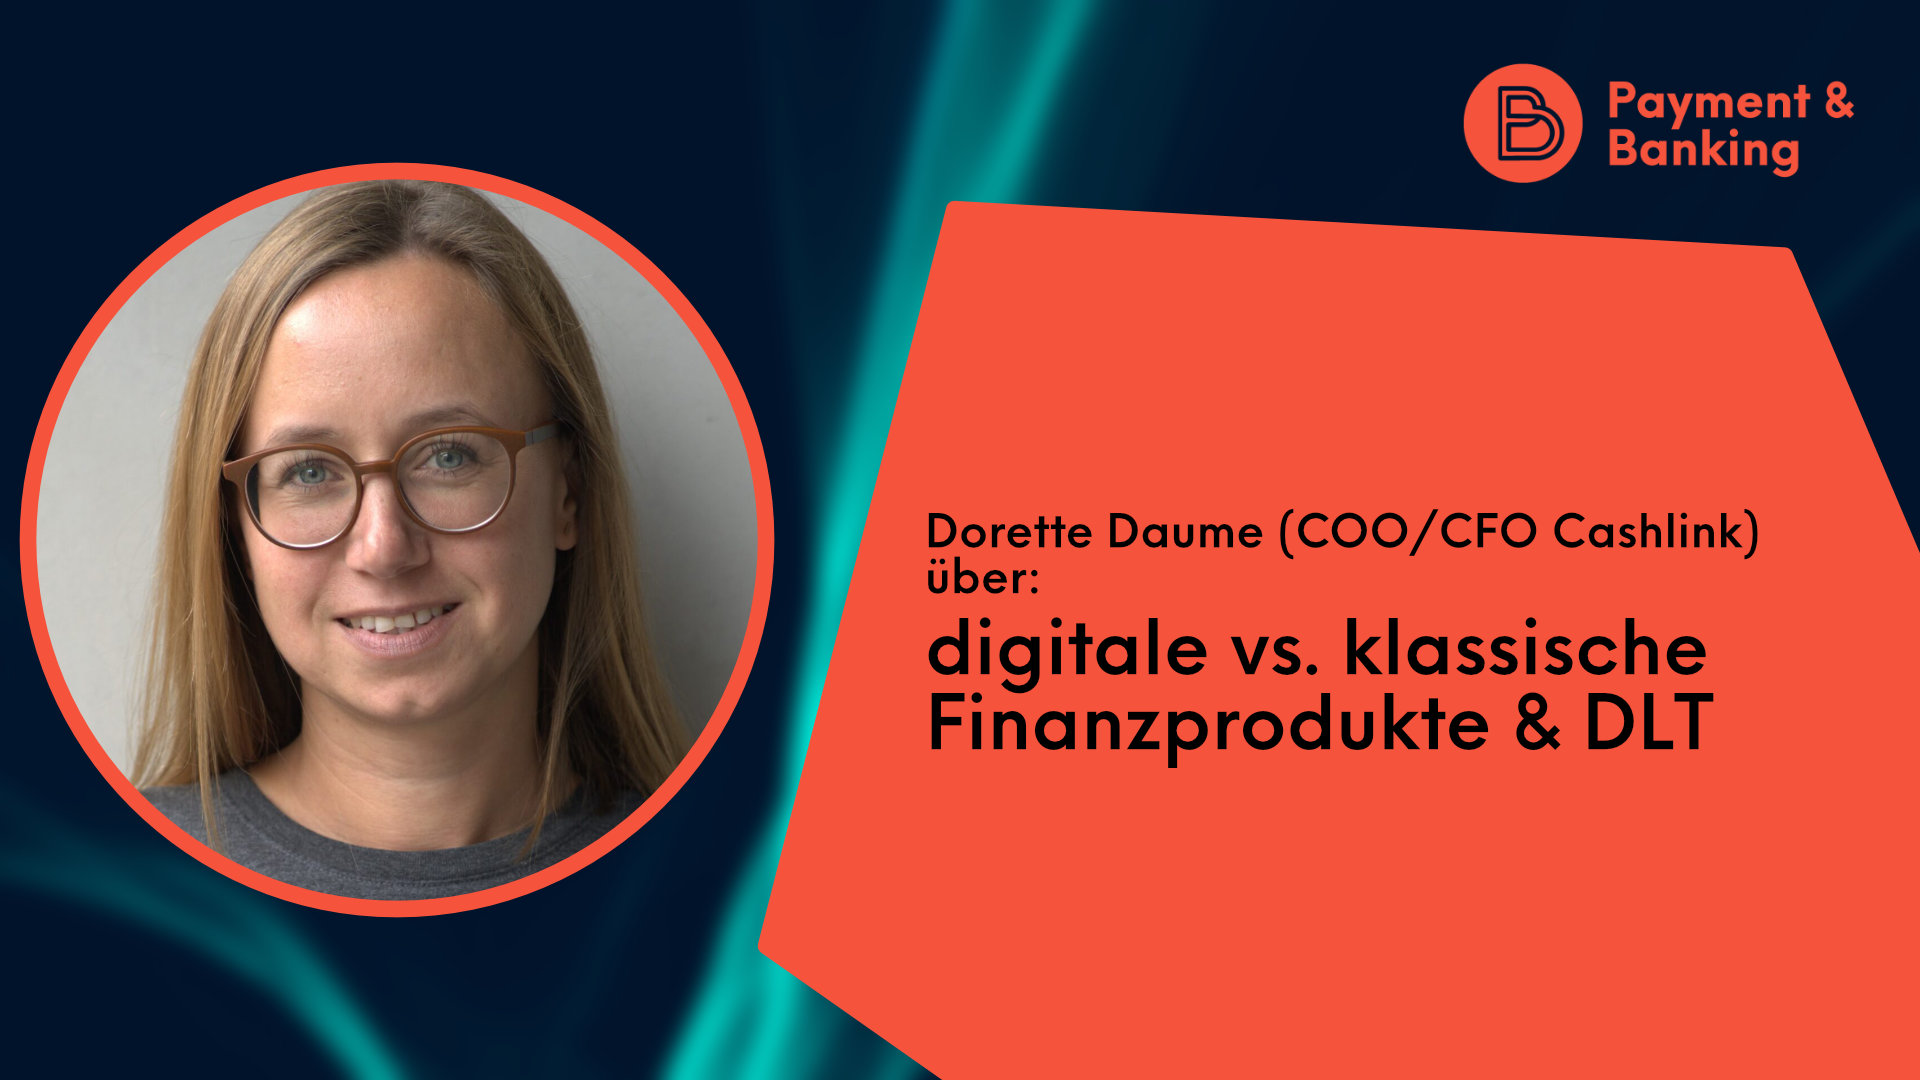 Dorette Daume von Cashlink spricht im Interview mit Payment & Banking über digitale vs. klassische Finanzprodukte & DLT.